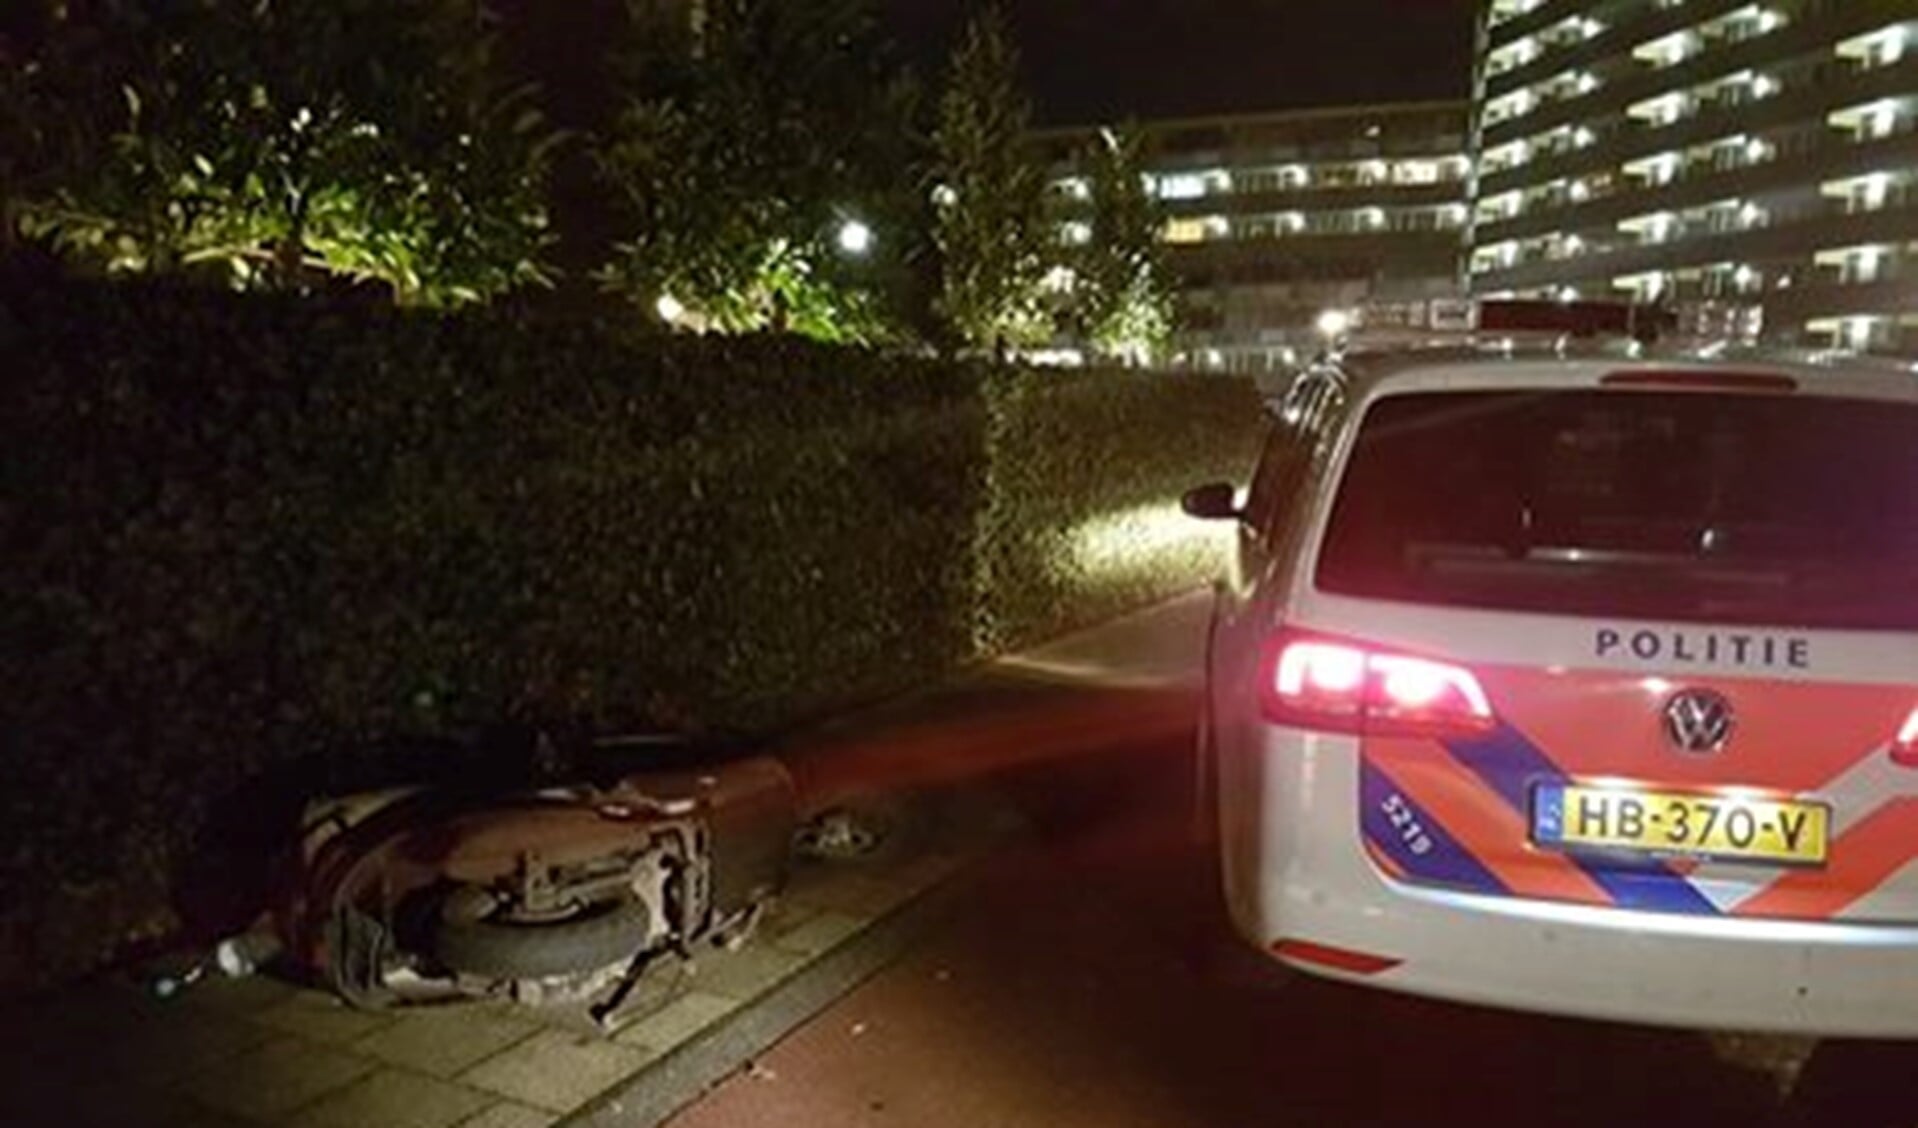 Foto: Politie Diemen Ouder-Amstel